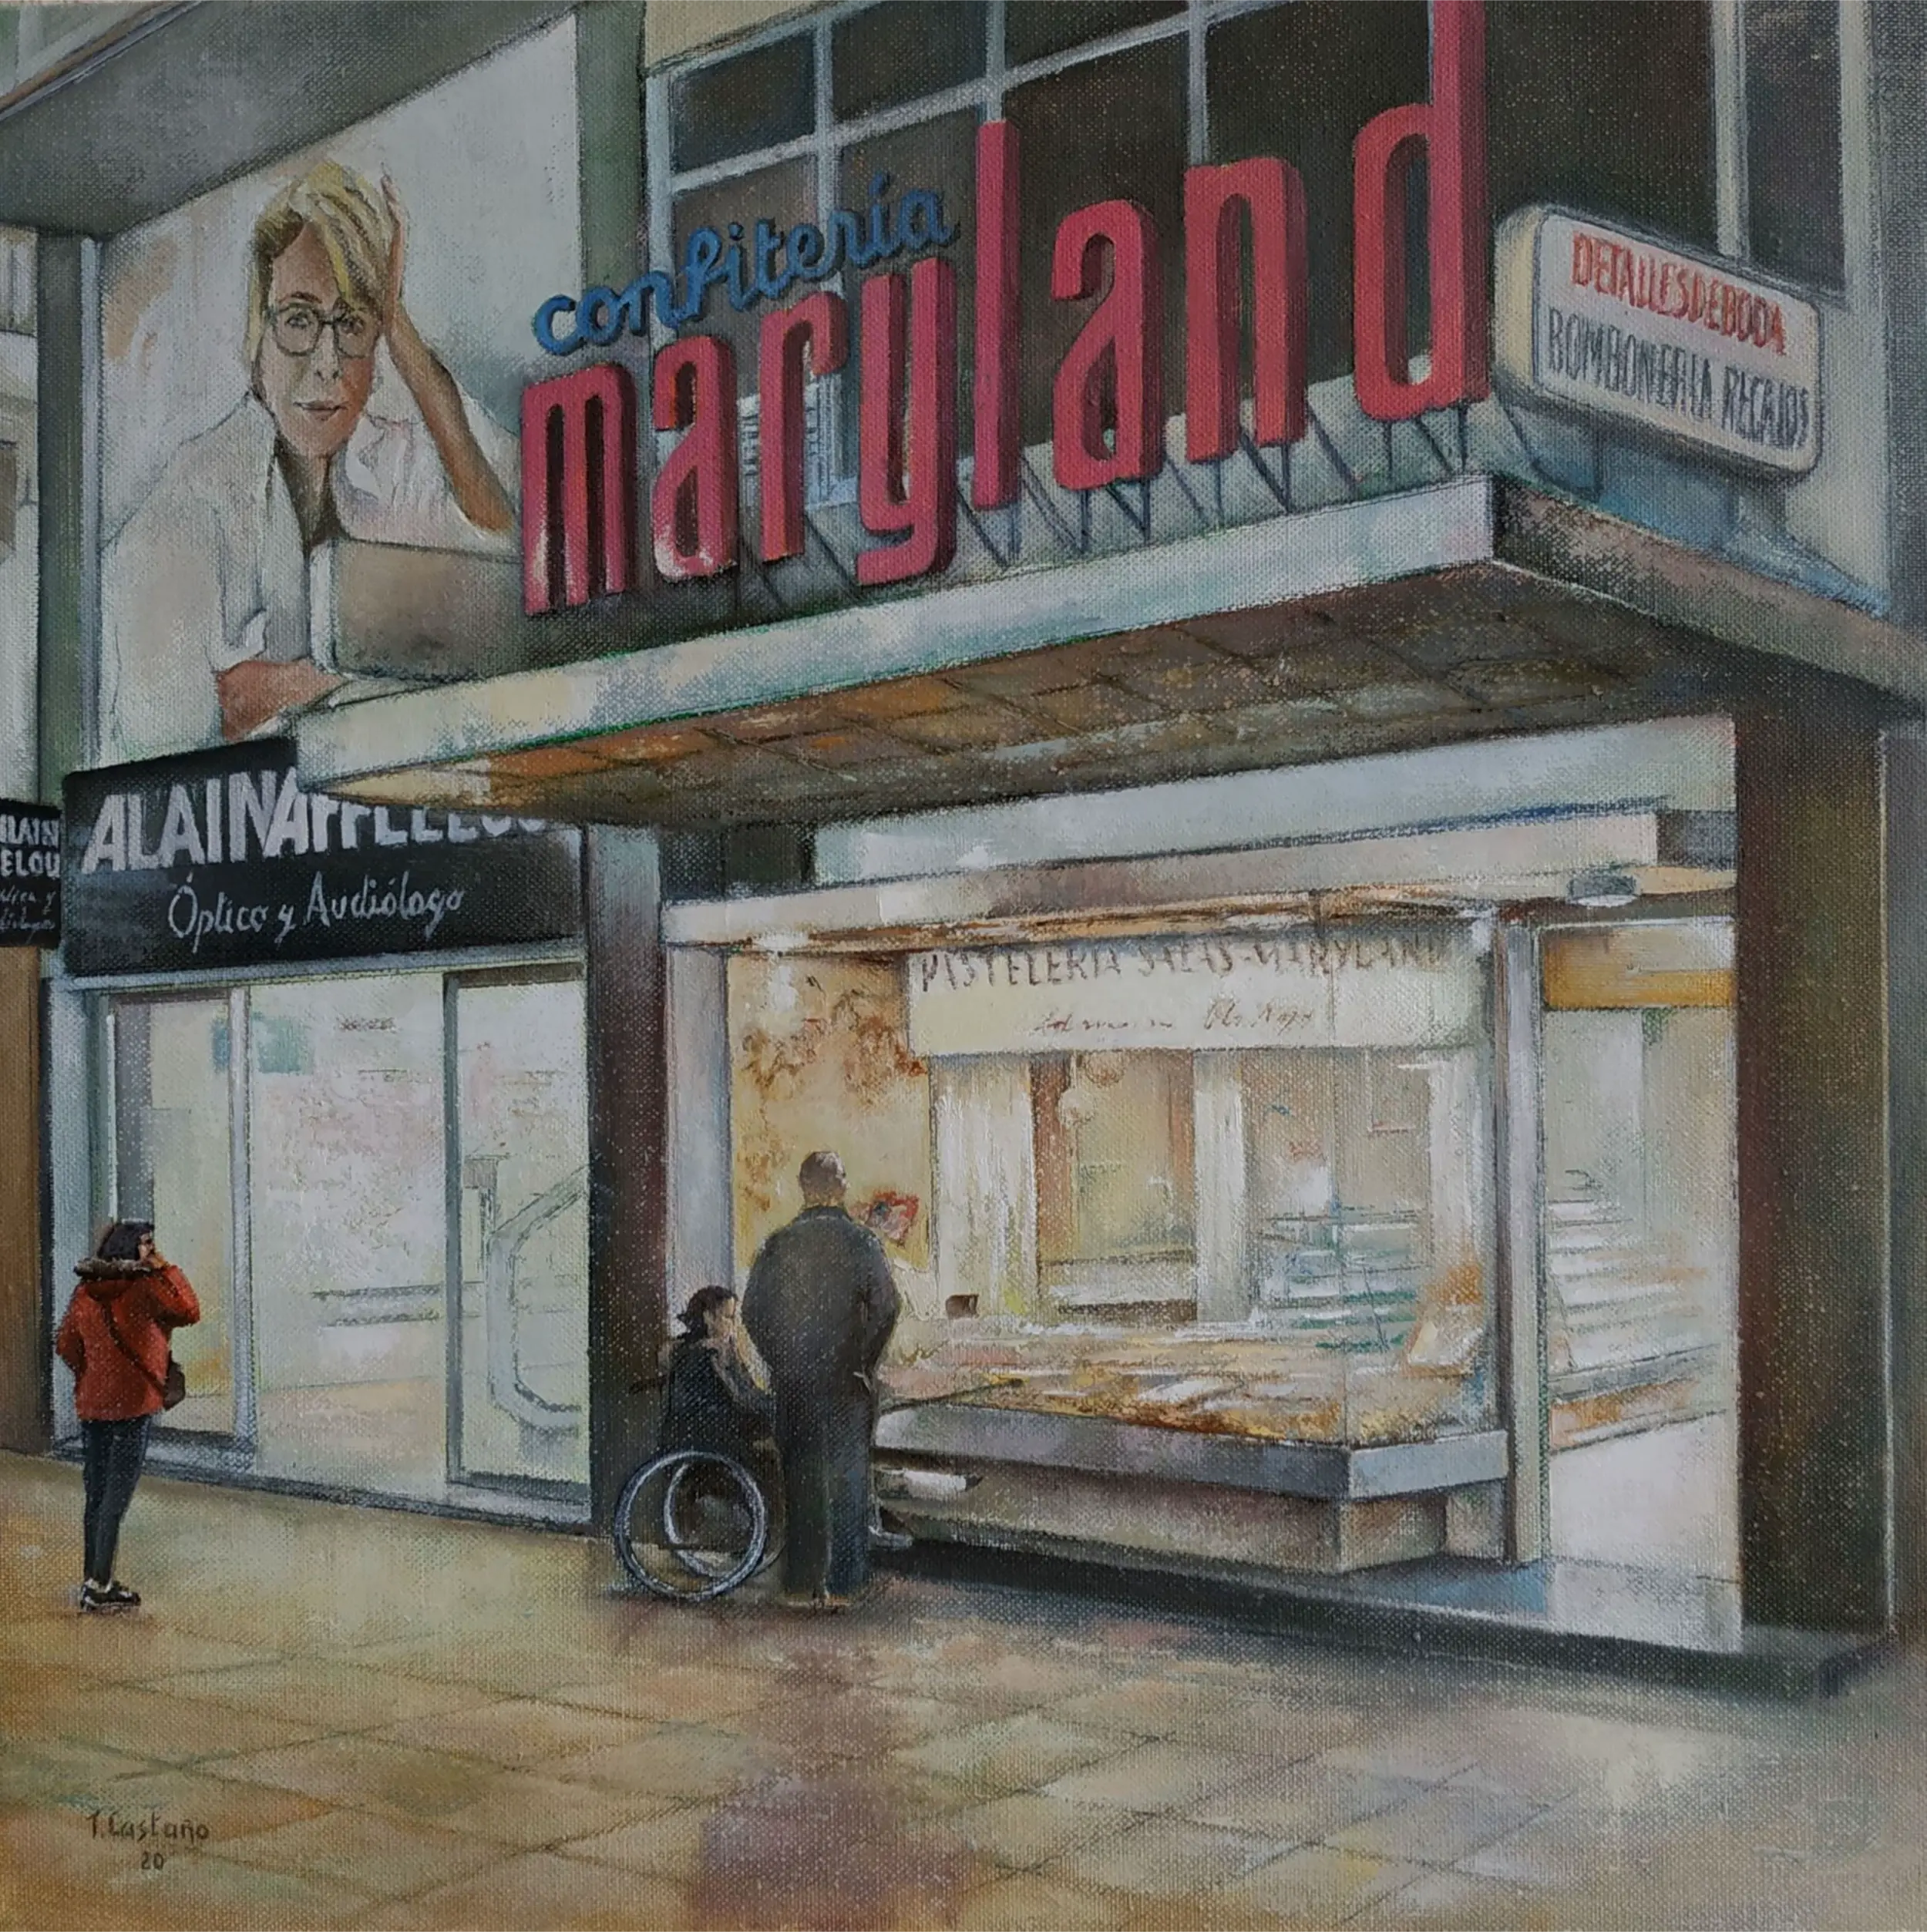 'MARYLAND CAKE SHOP'